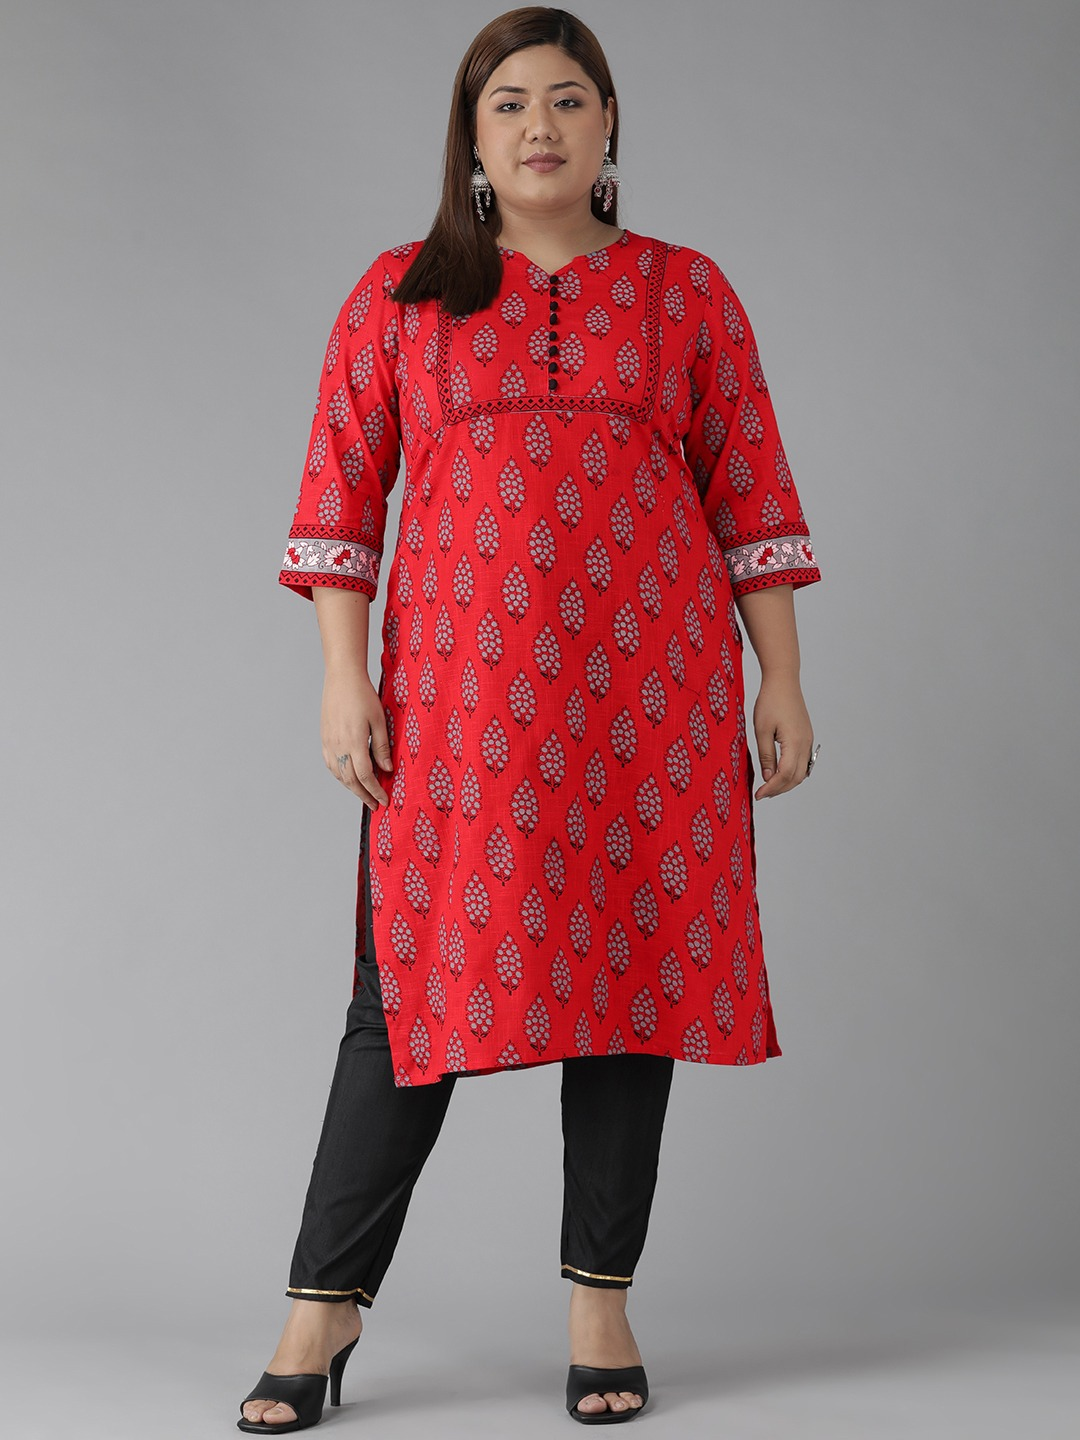 Buy Red Rayon Straight Kurti (Kurti) for INR1299.00 | Biba India